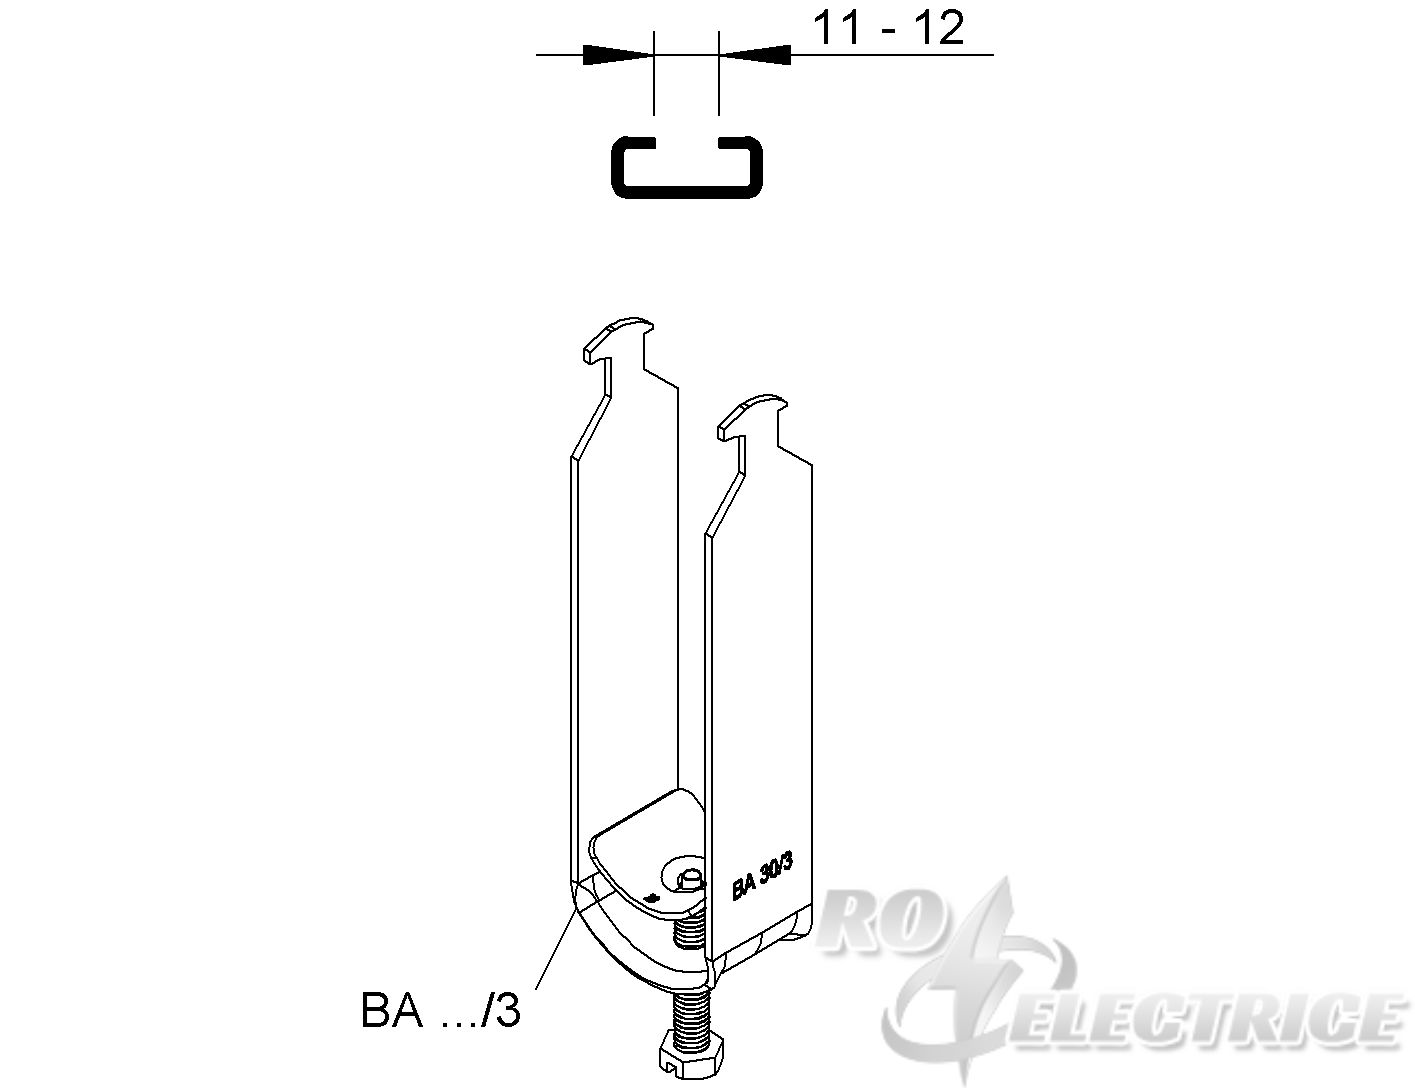 Hammerfuß-Bügelschelle, für 3 Kabel, Ø 9-12 mm, Schlitzweite 11-12 mm, Stahl, feuerverzinkt DIN EN ISO 1461, mit Stahldr